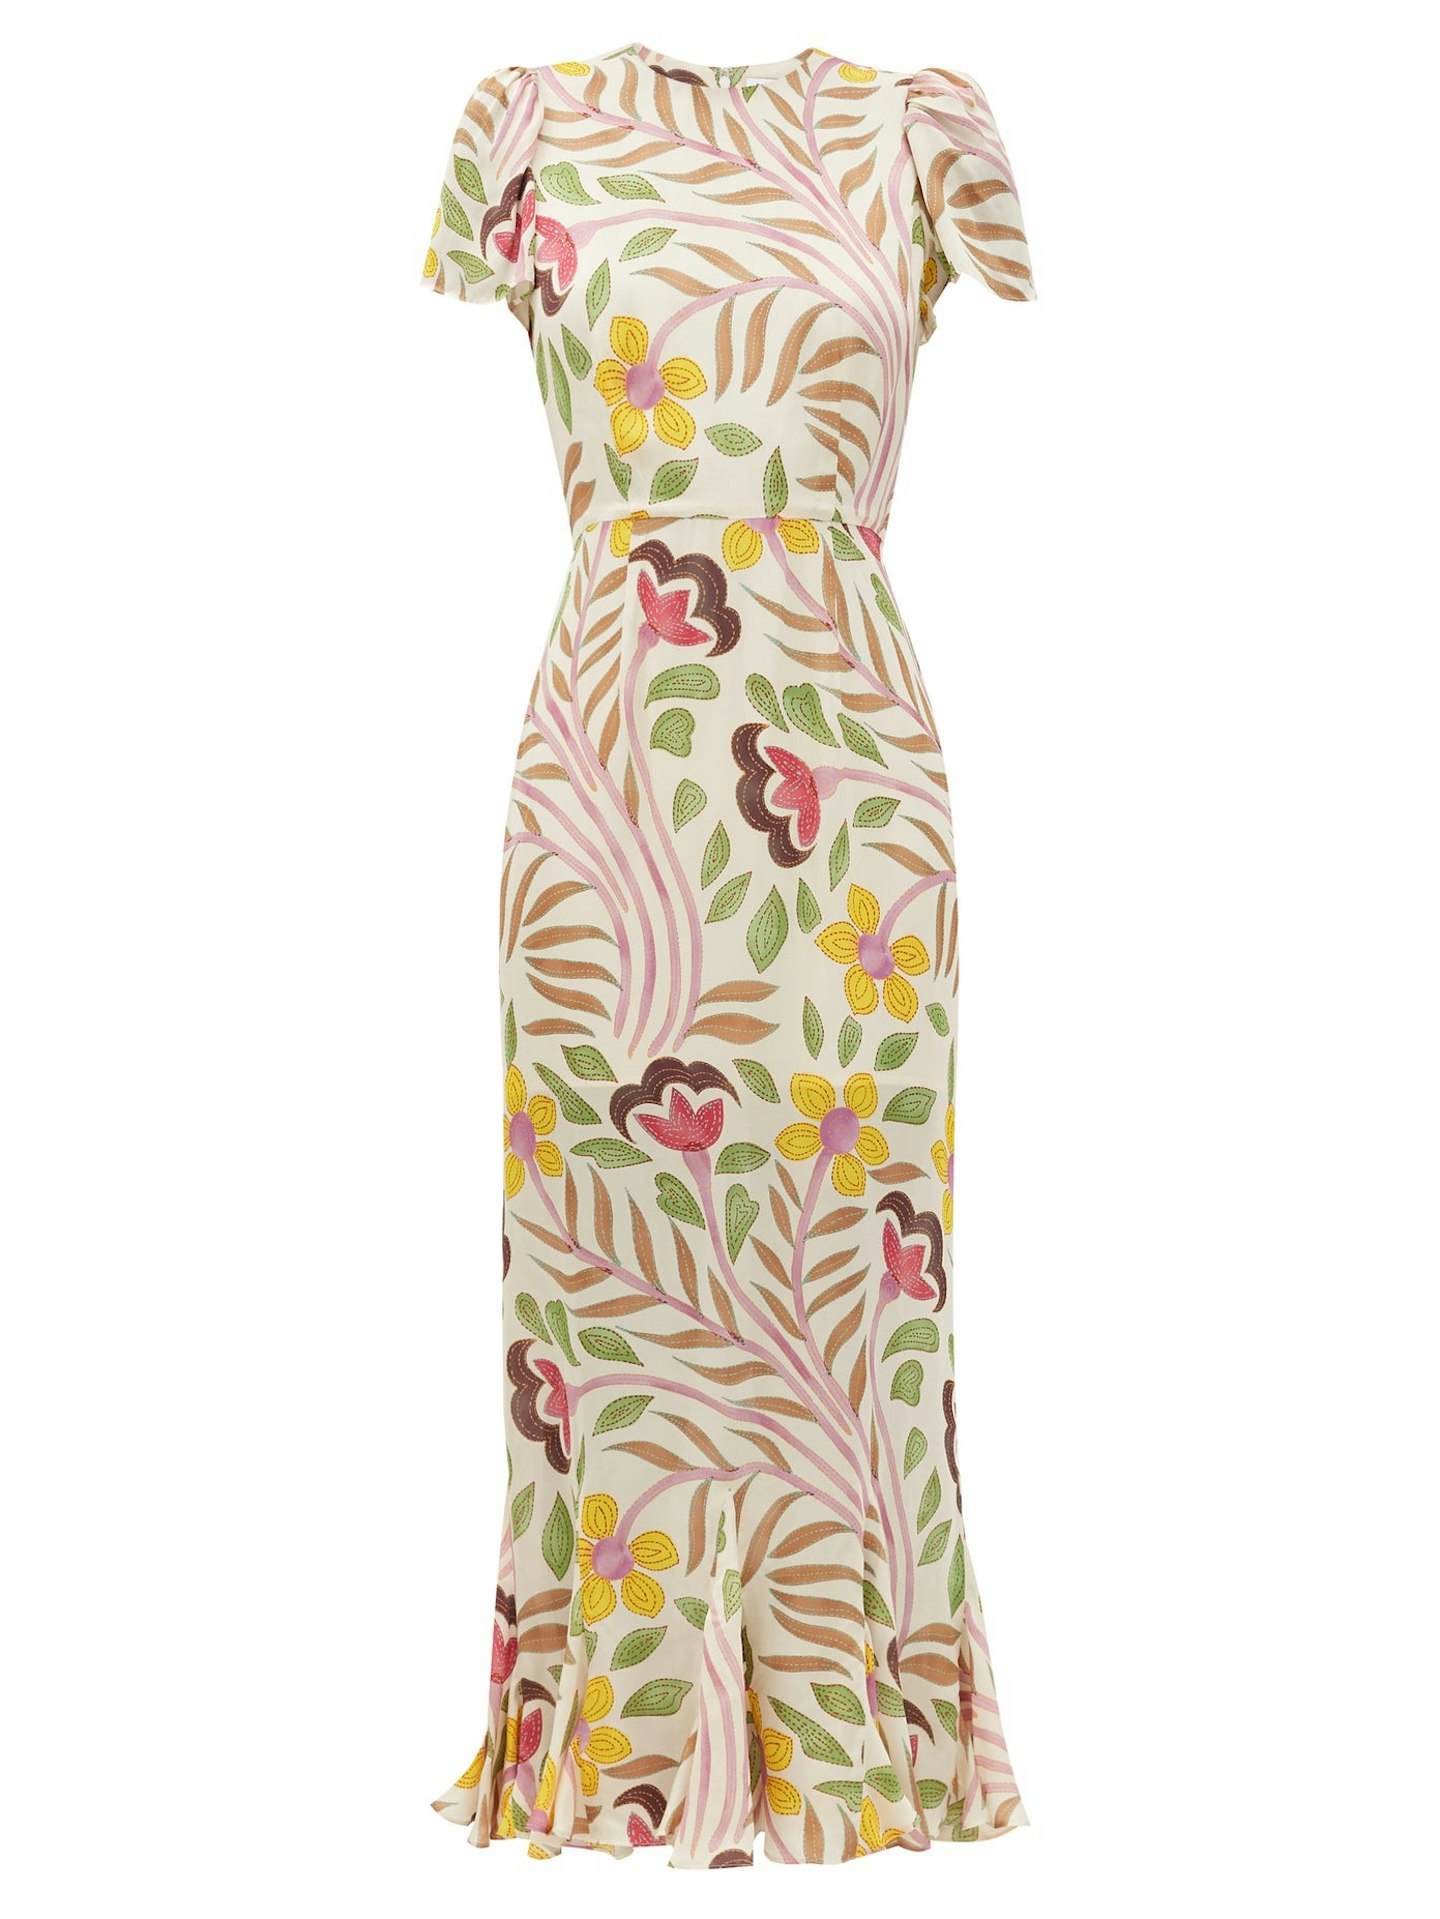 RHODE, Lulani Dress, £460